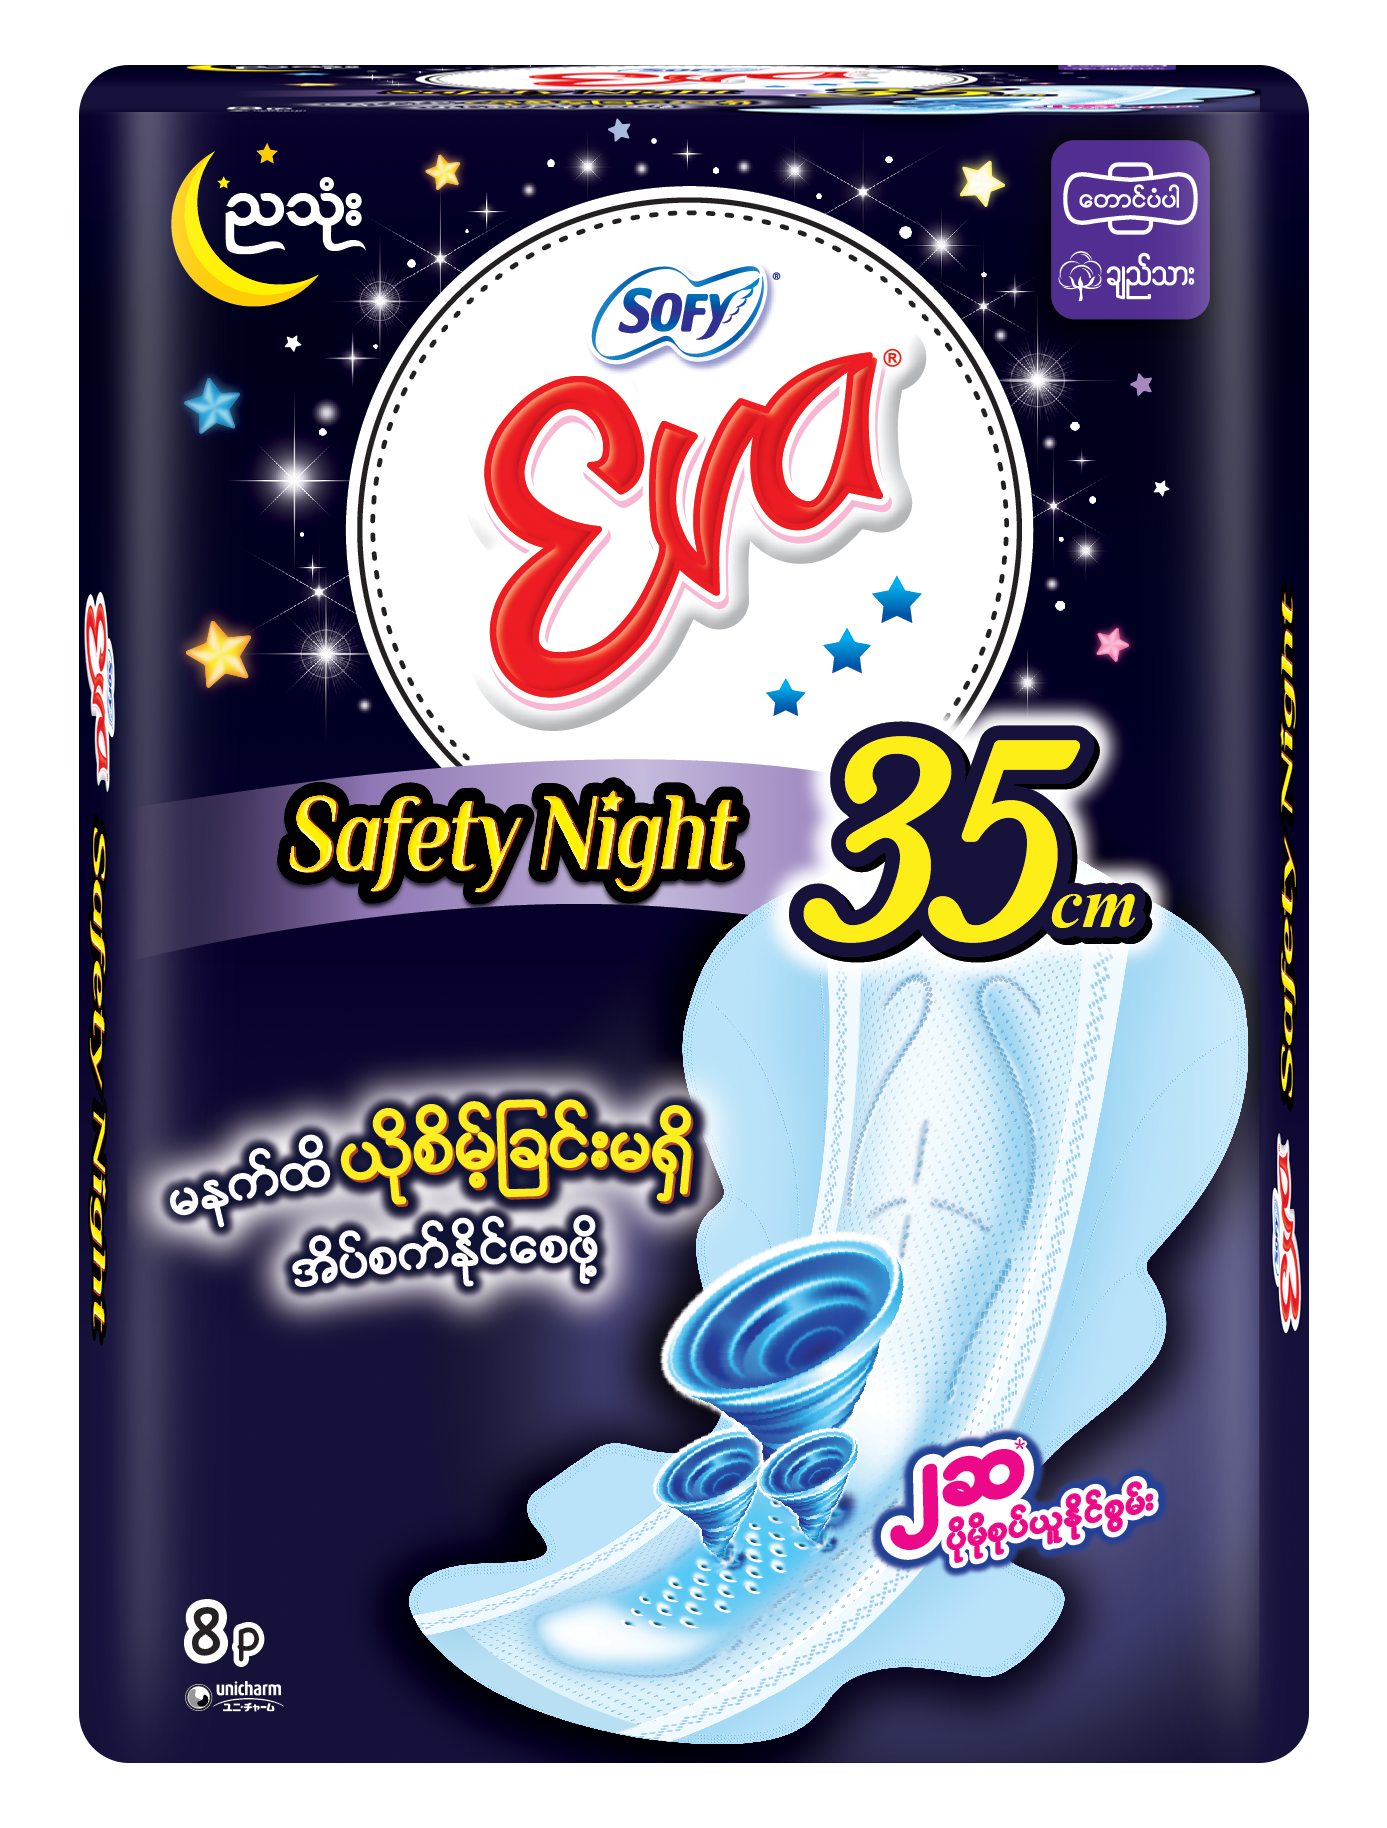 Eva Safety Night 35cm